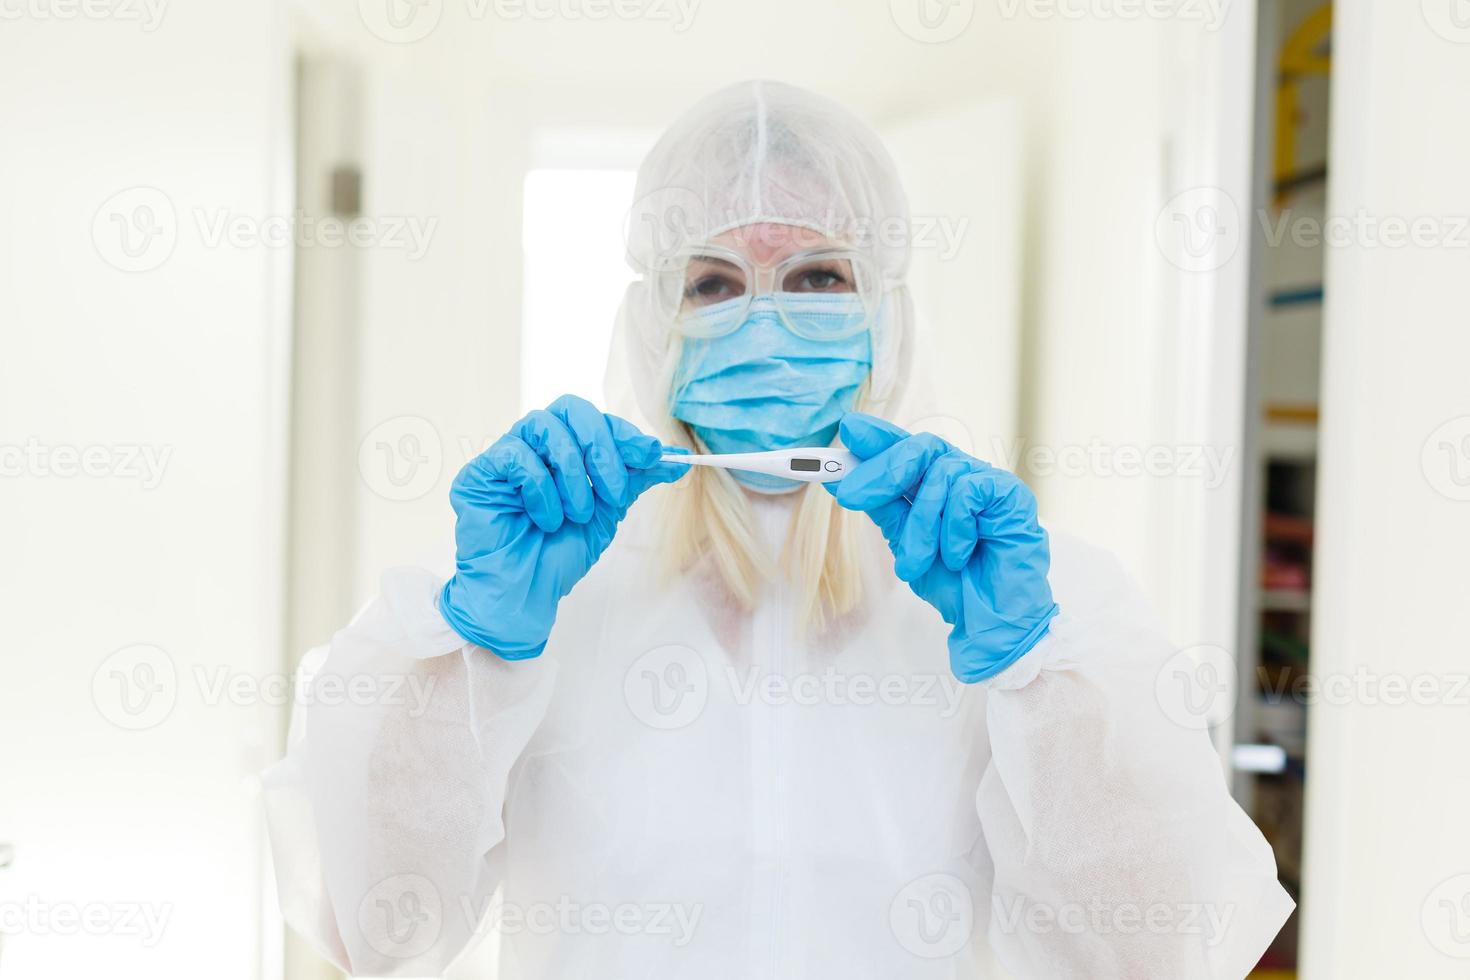 forskare i hazmat skyddande kostym granskning en testa rör i de kemisk labb. foto